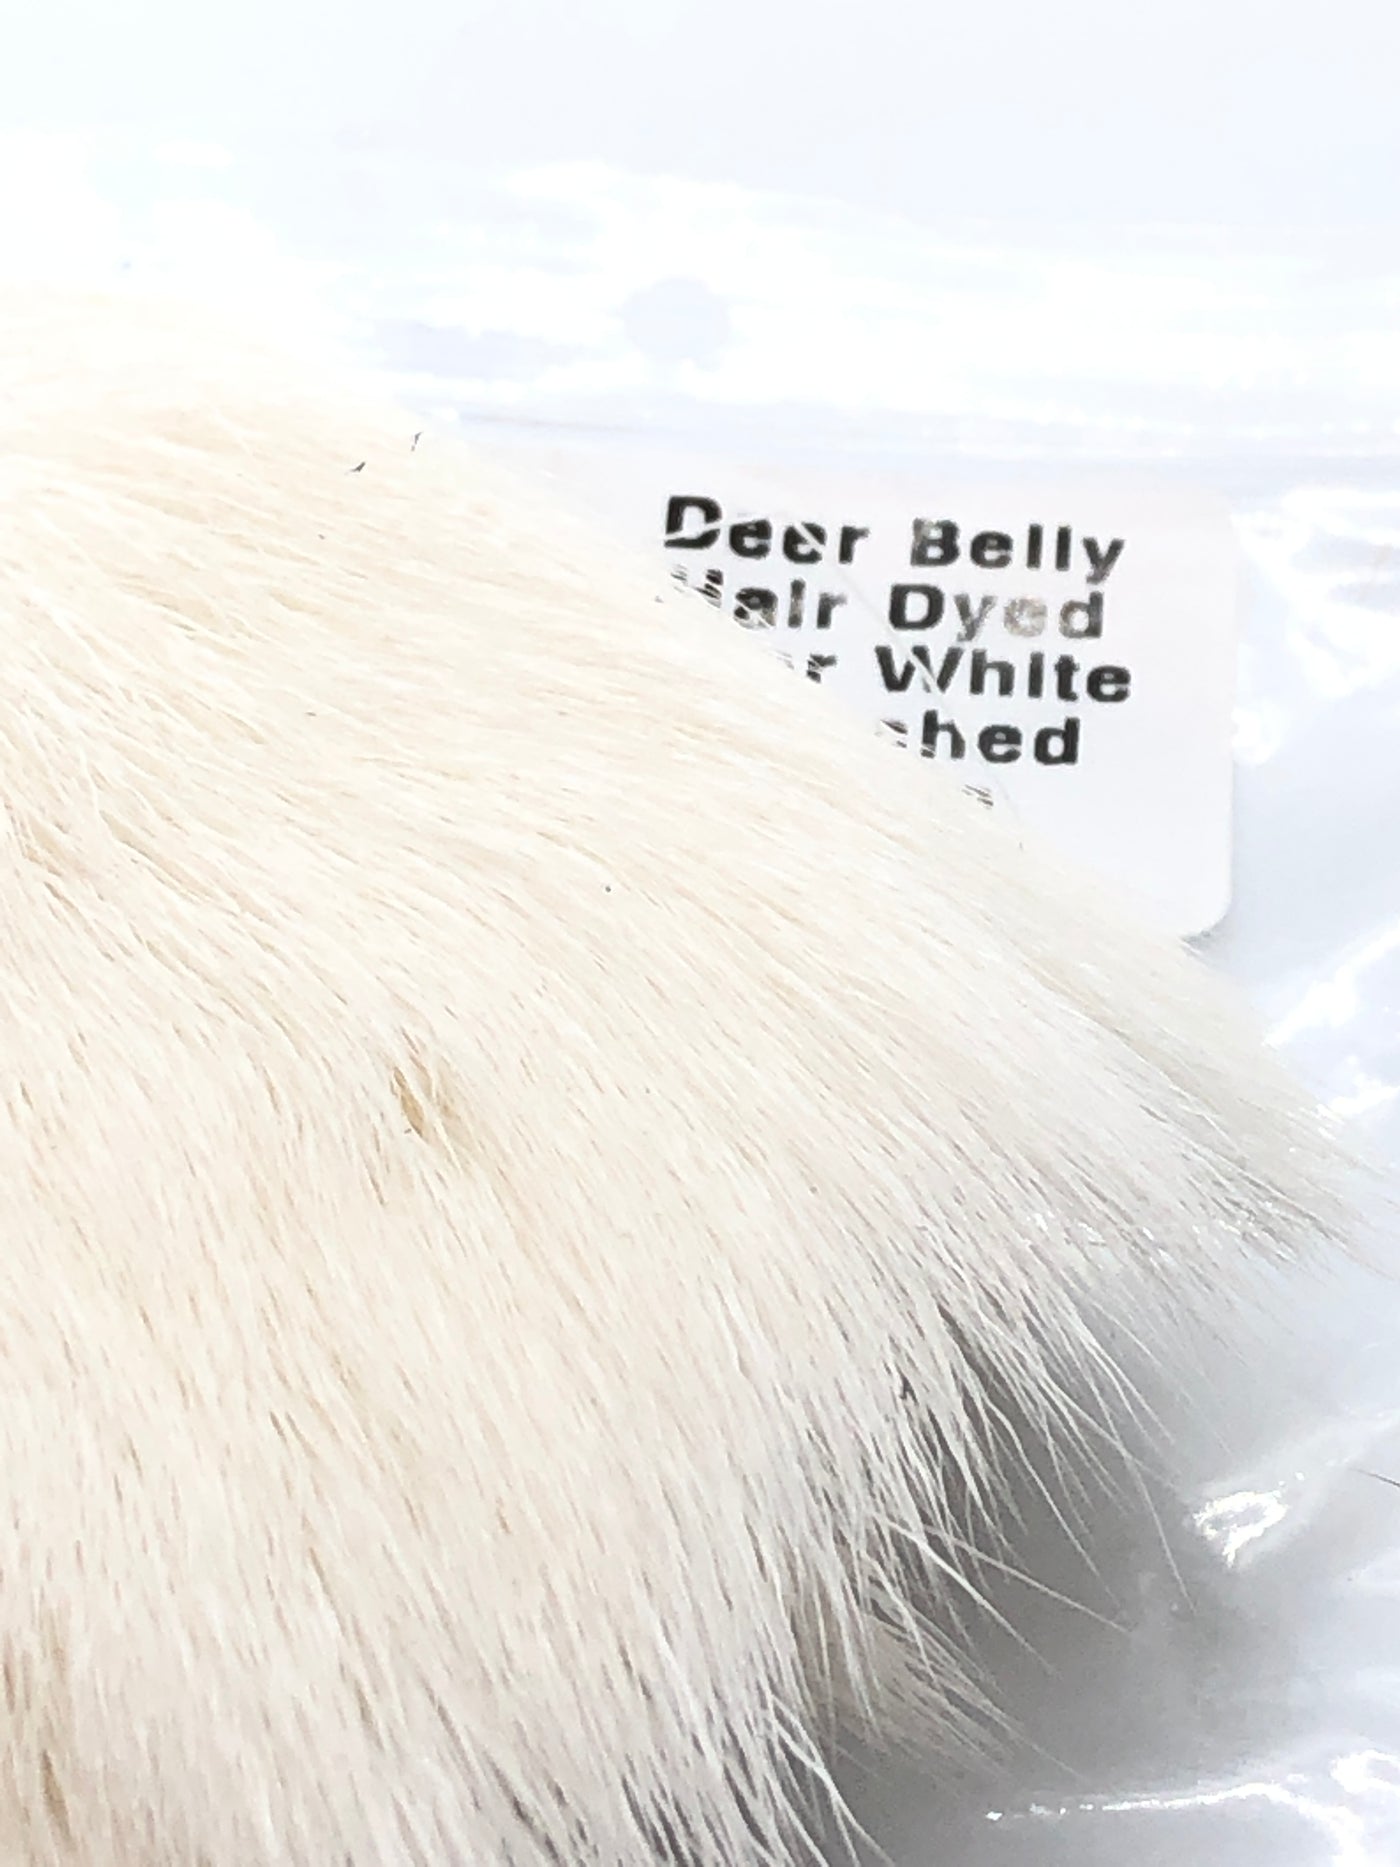 Deer Belly Hair